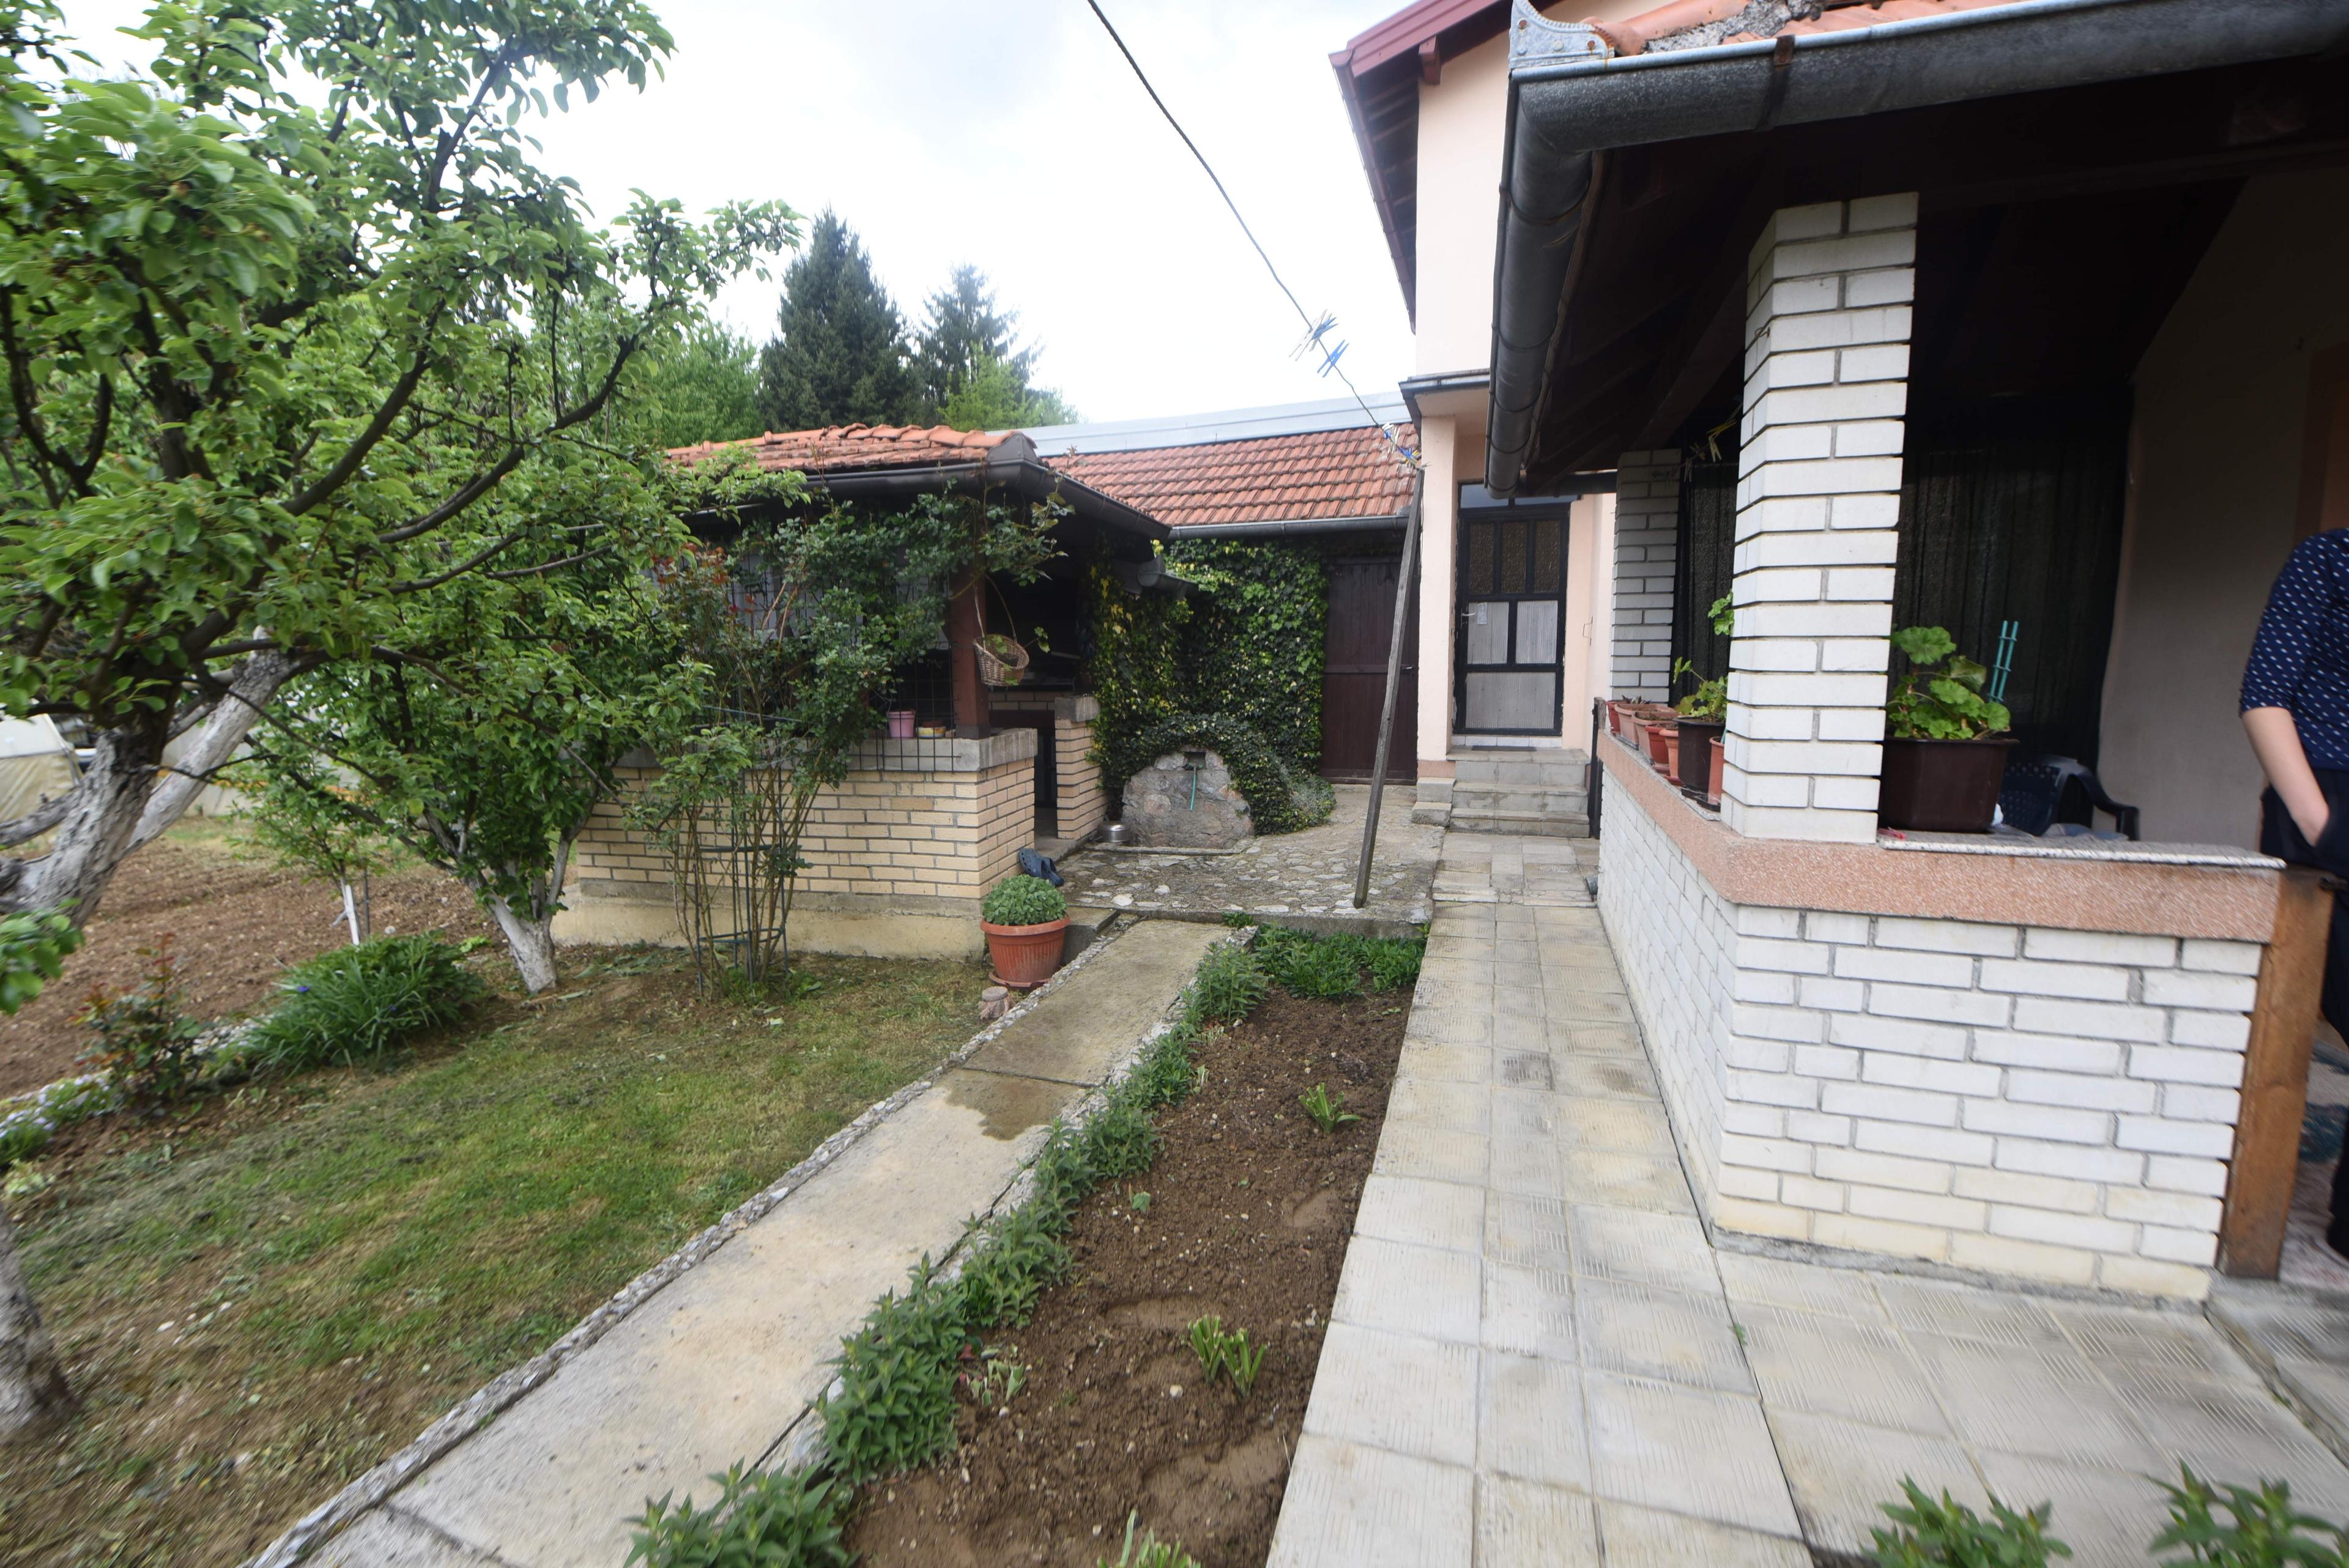 Dvorište ispred kuće Hajrulaha Šišića gdje je pronađen mrtav - Avaz